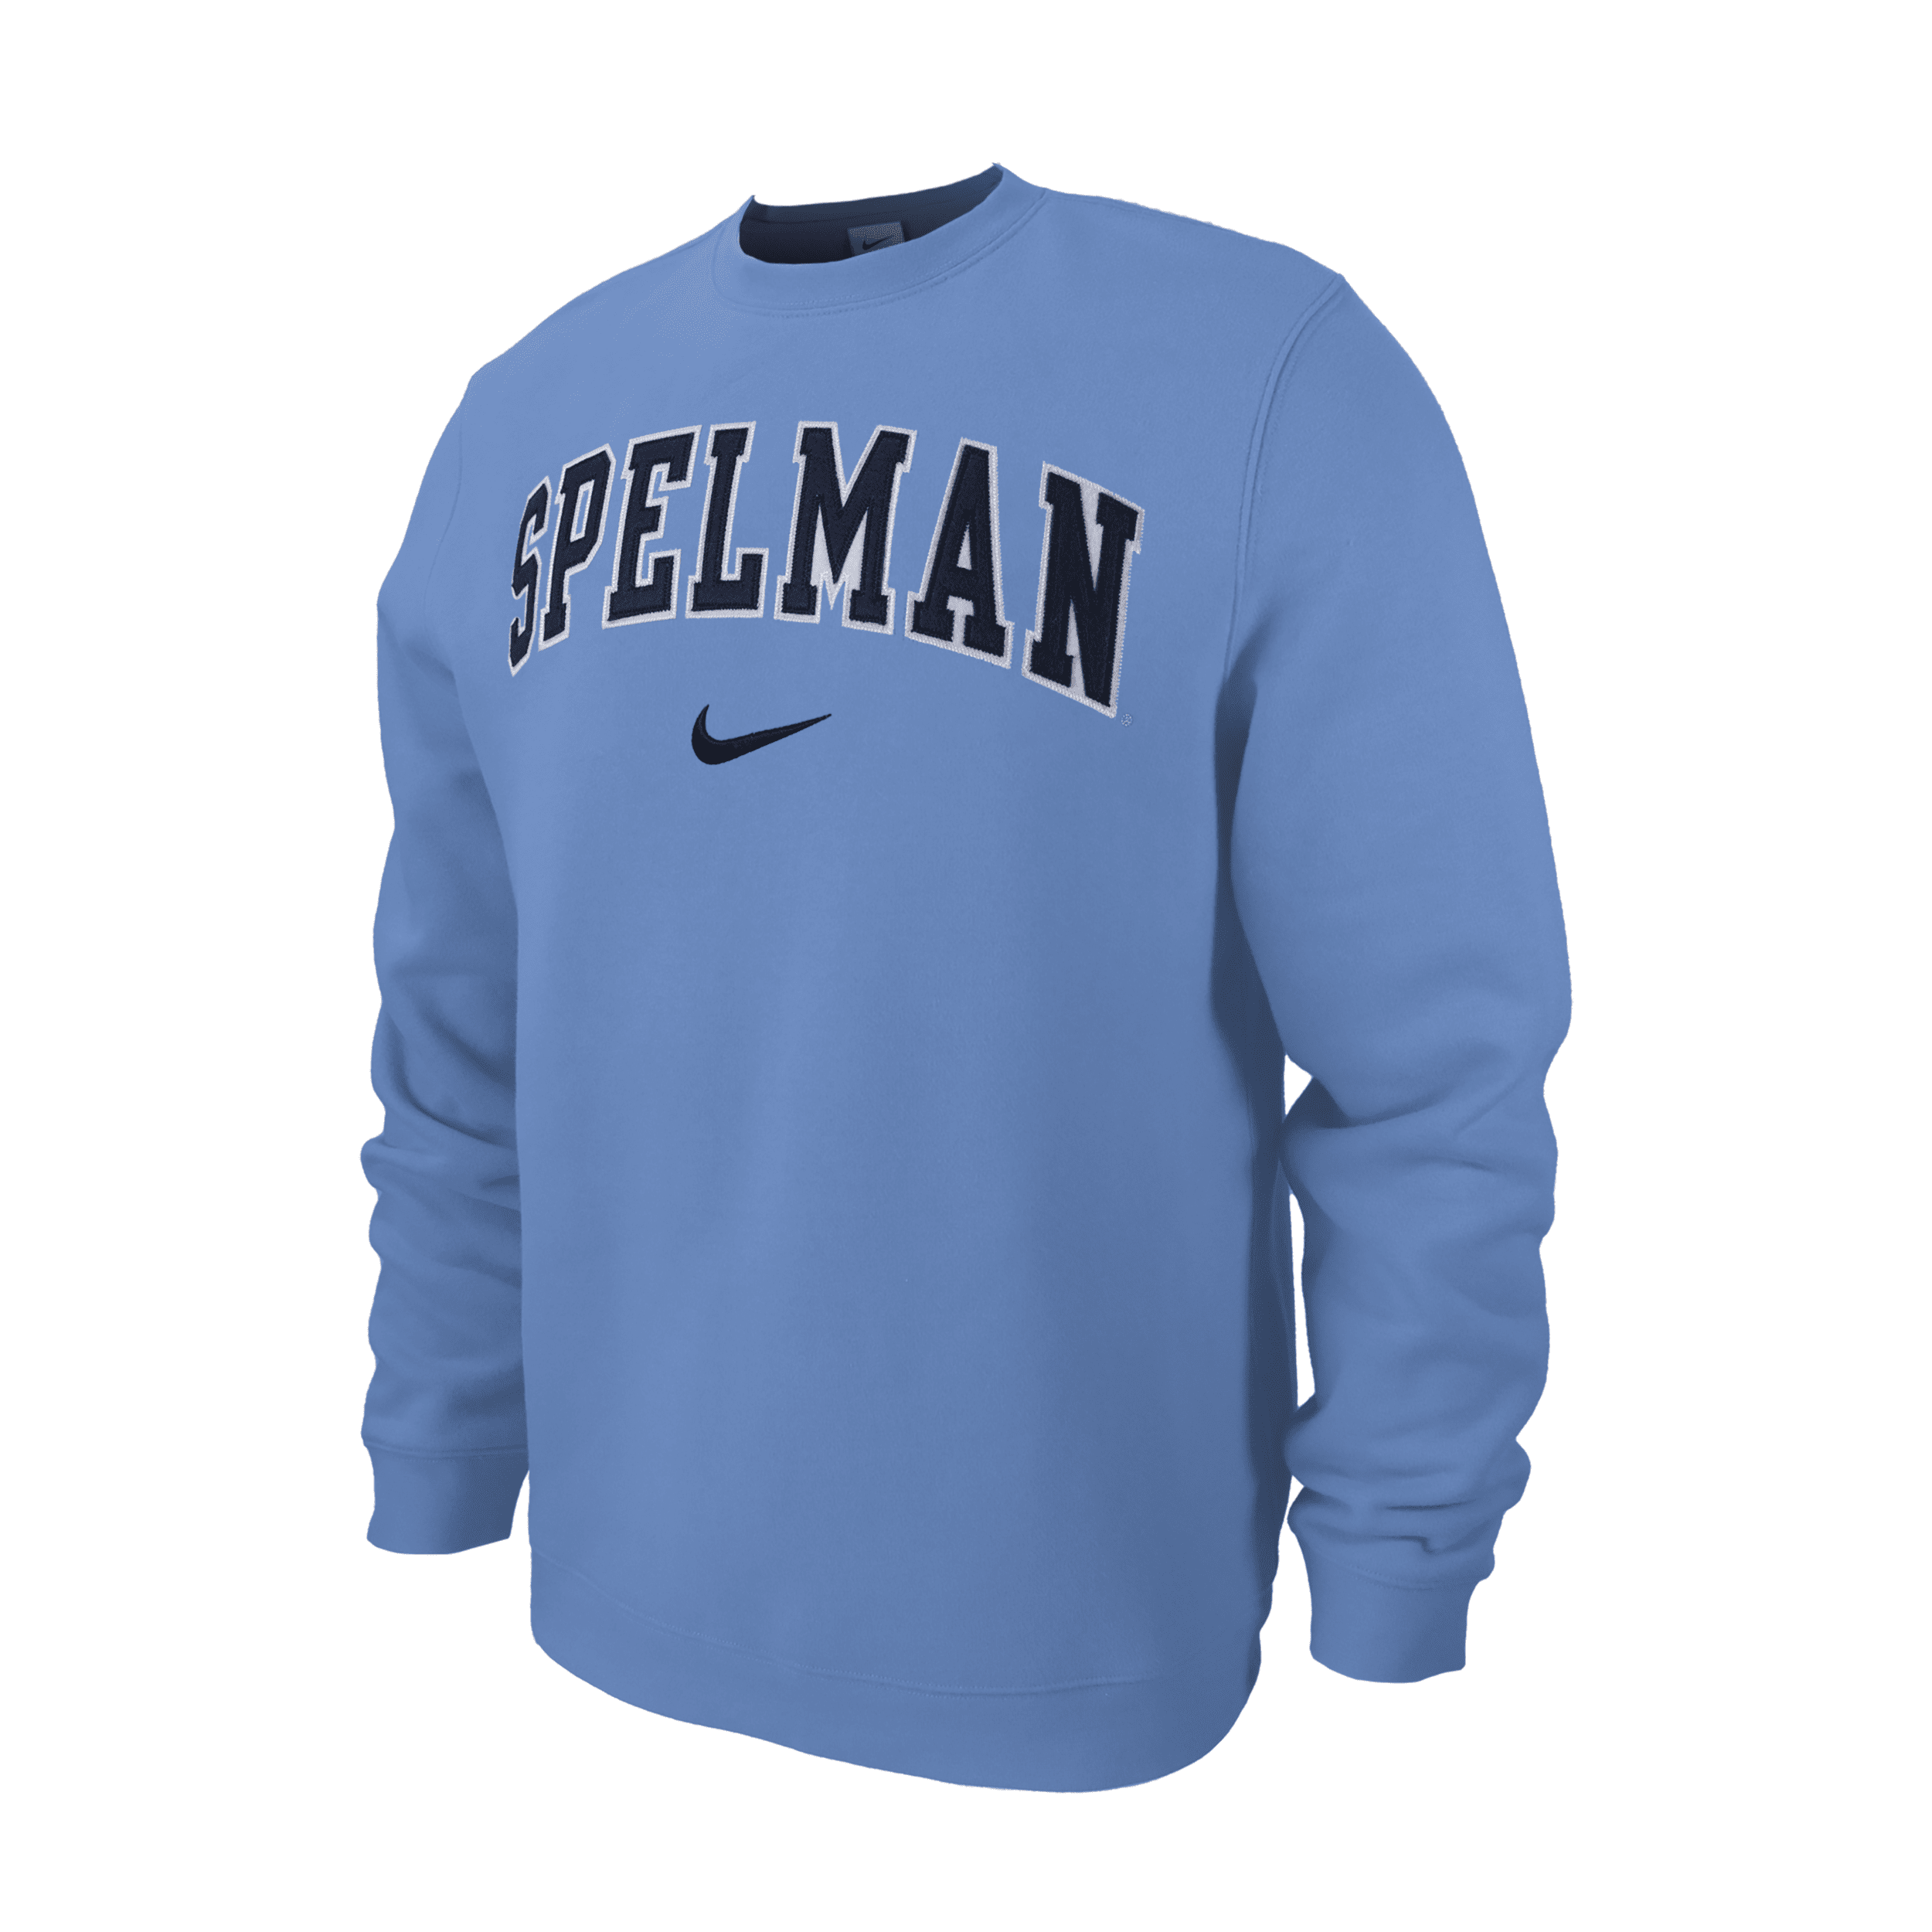 Nike Spelman Club Fleece  Men's College Crew-neck Sweatshirt In Blue